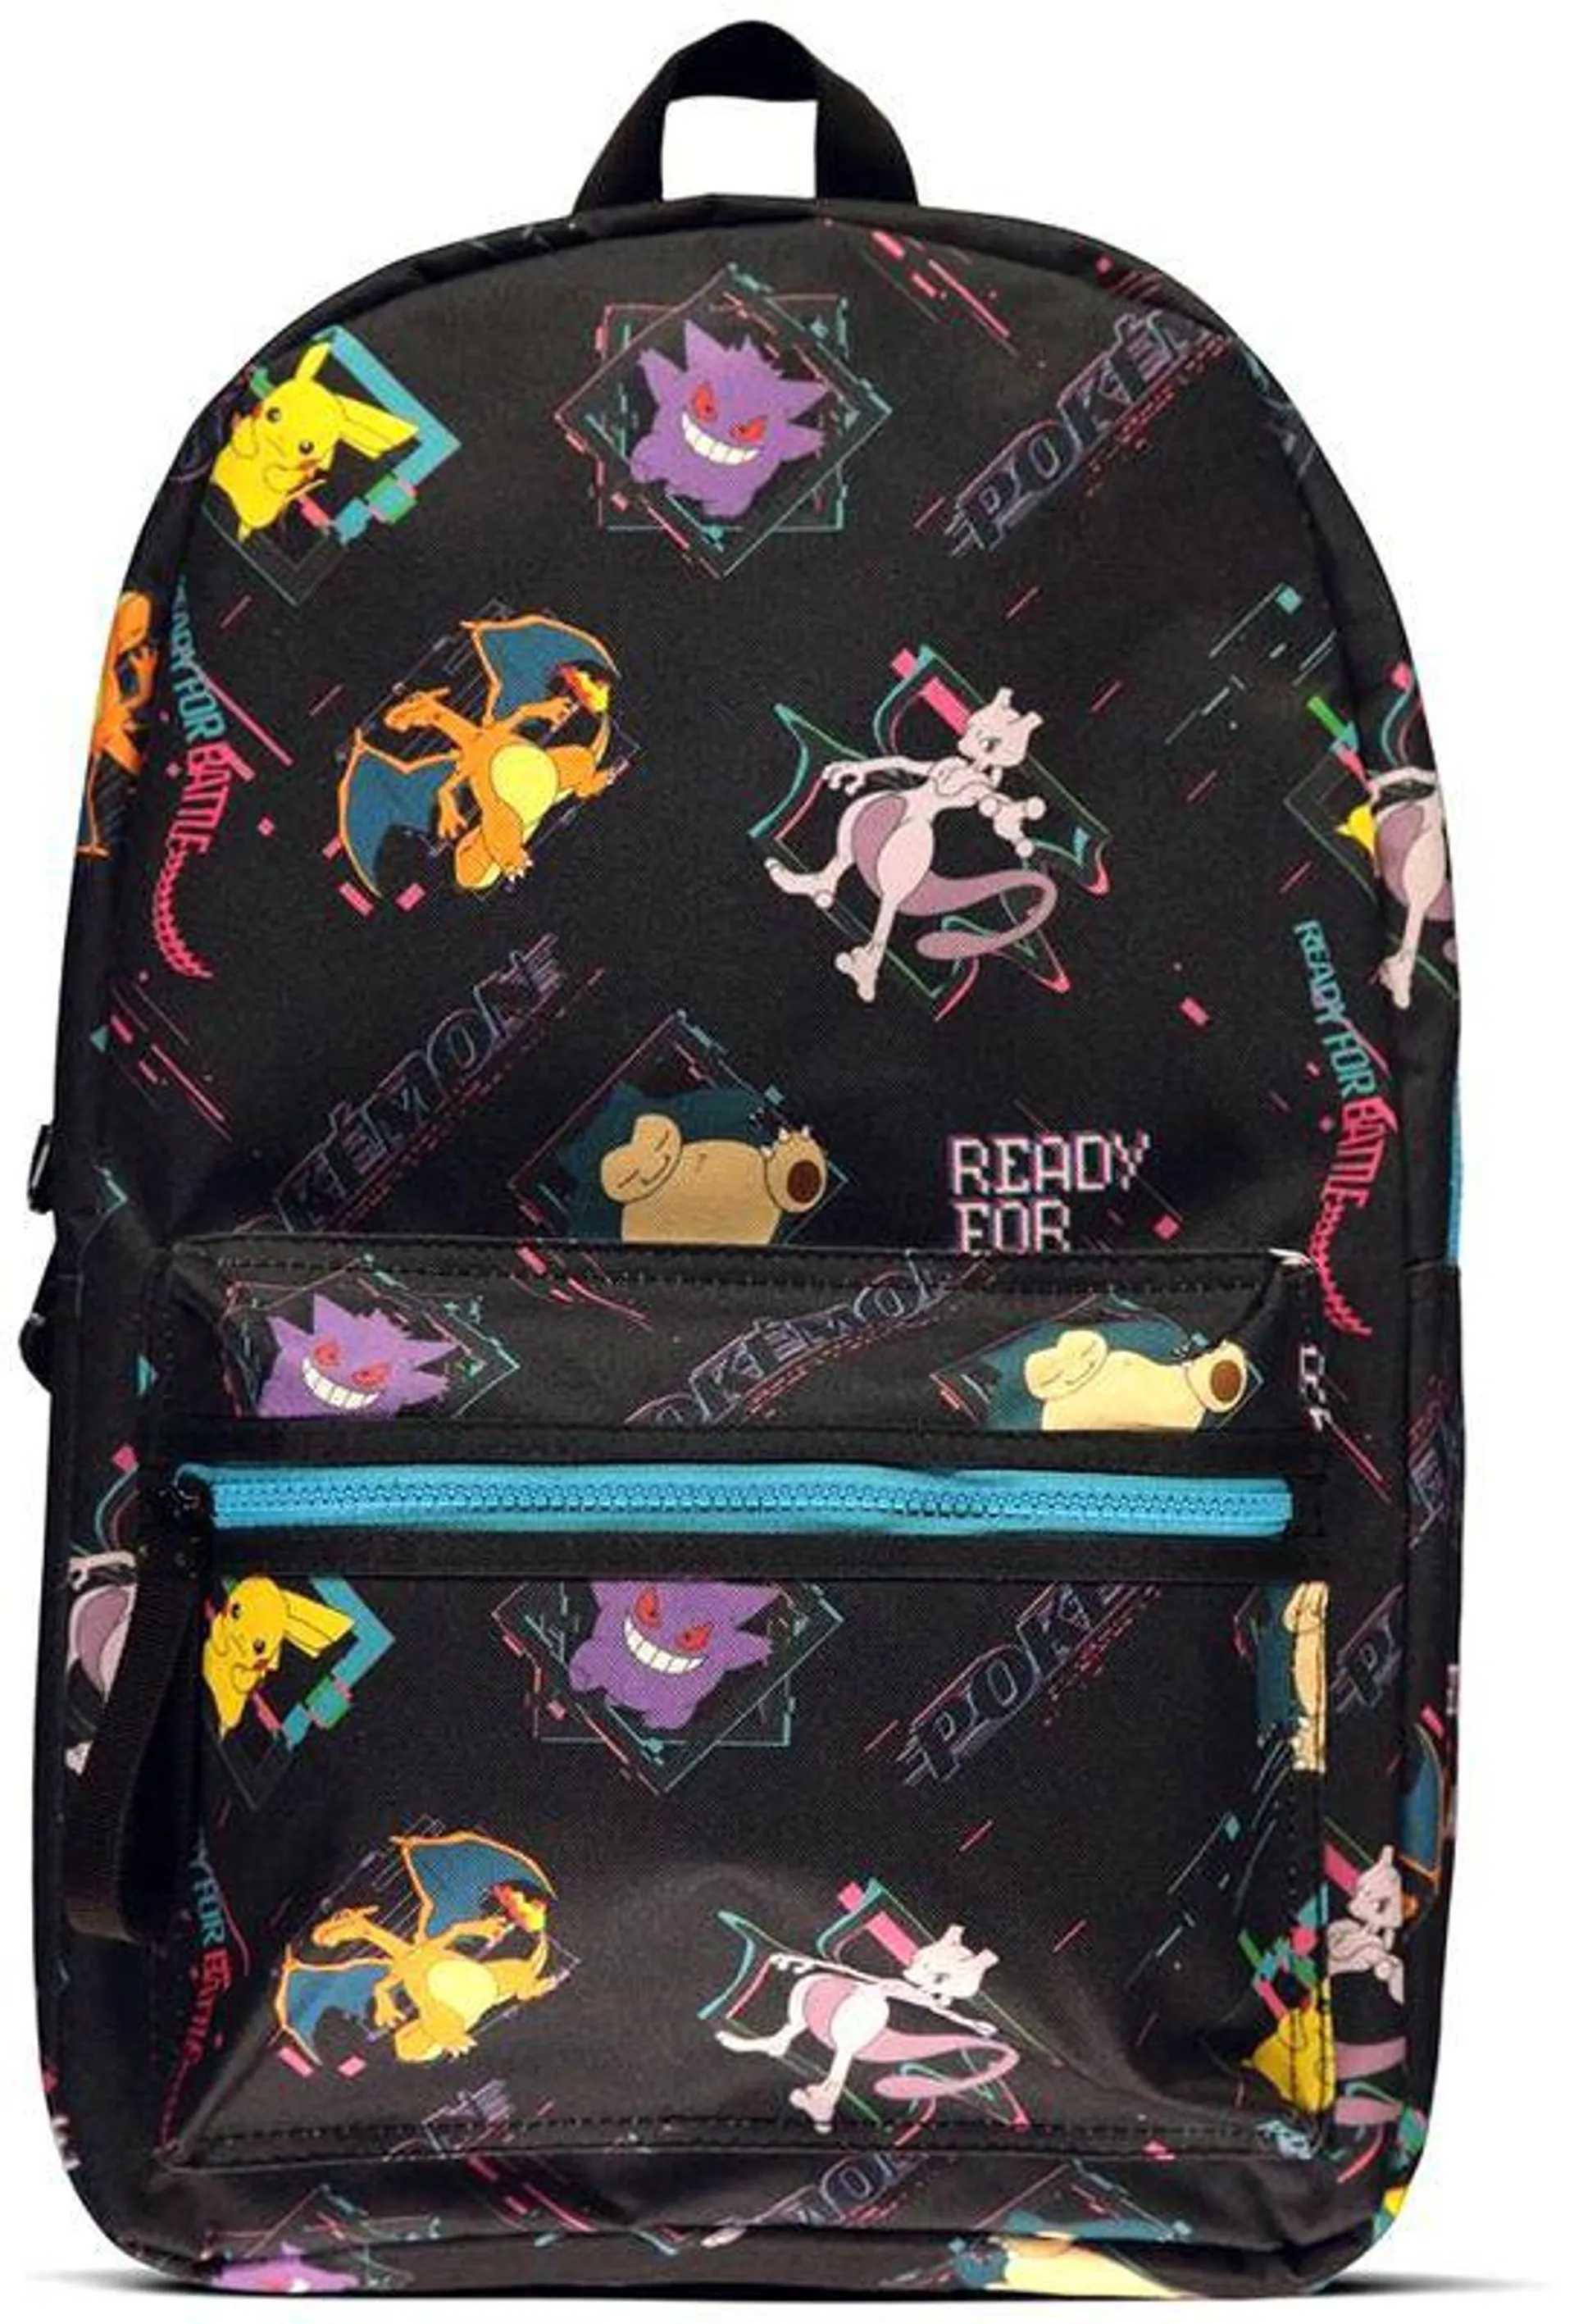 Pokémon - Mix Up Backpack | Zaino | multicolore | Pokémon